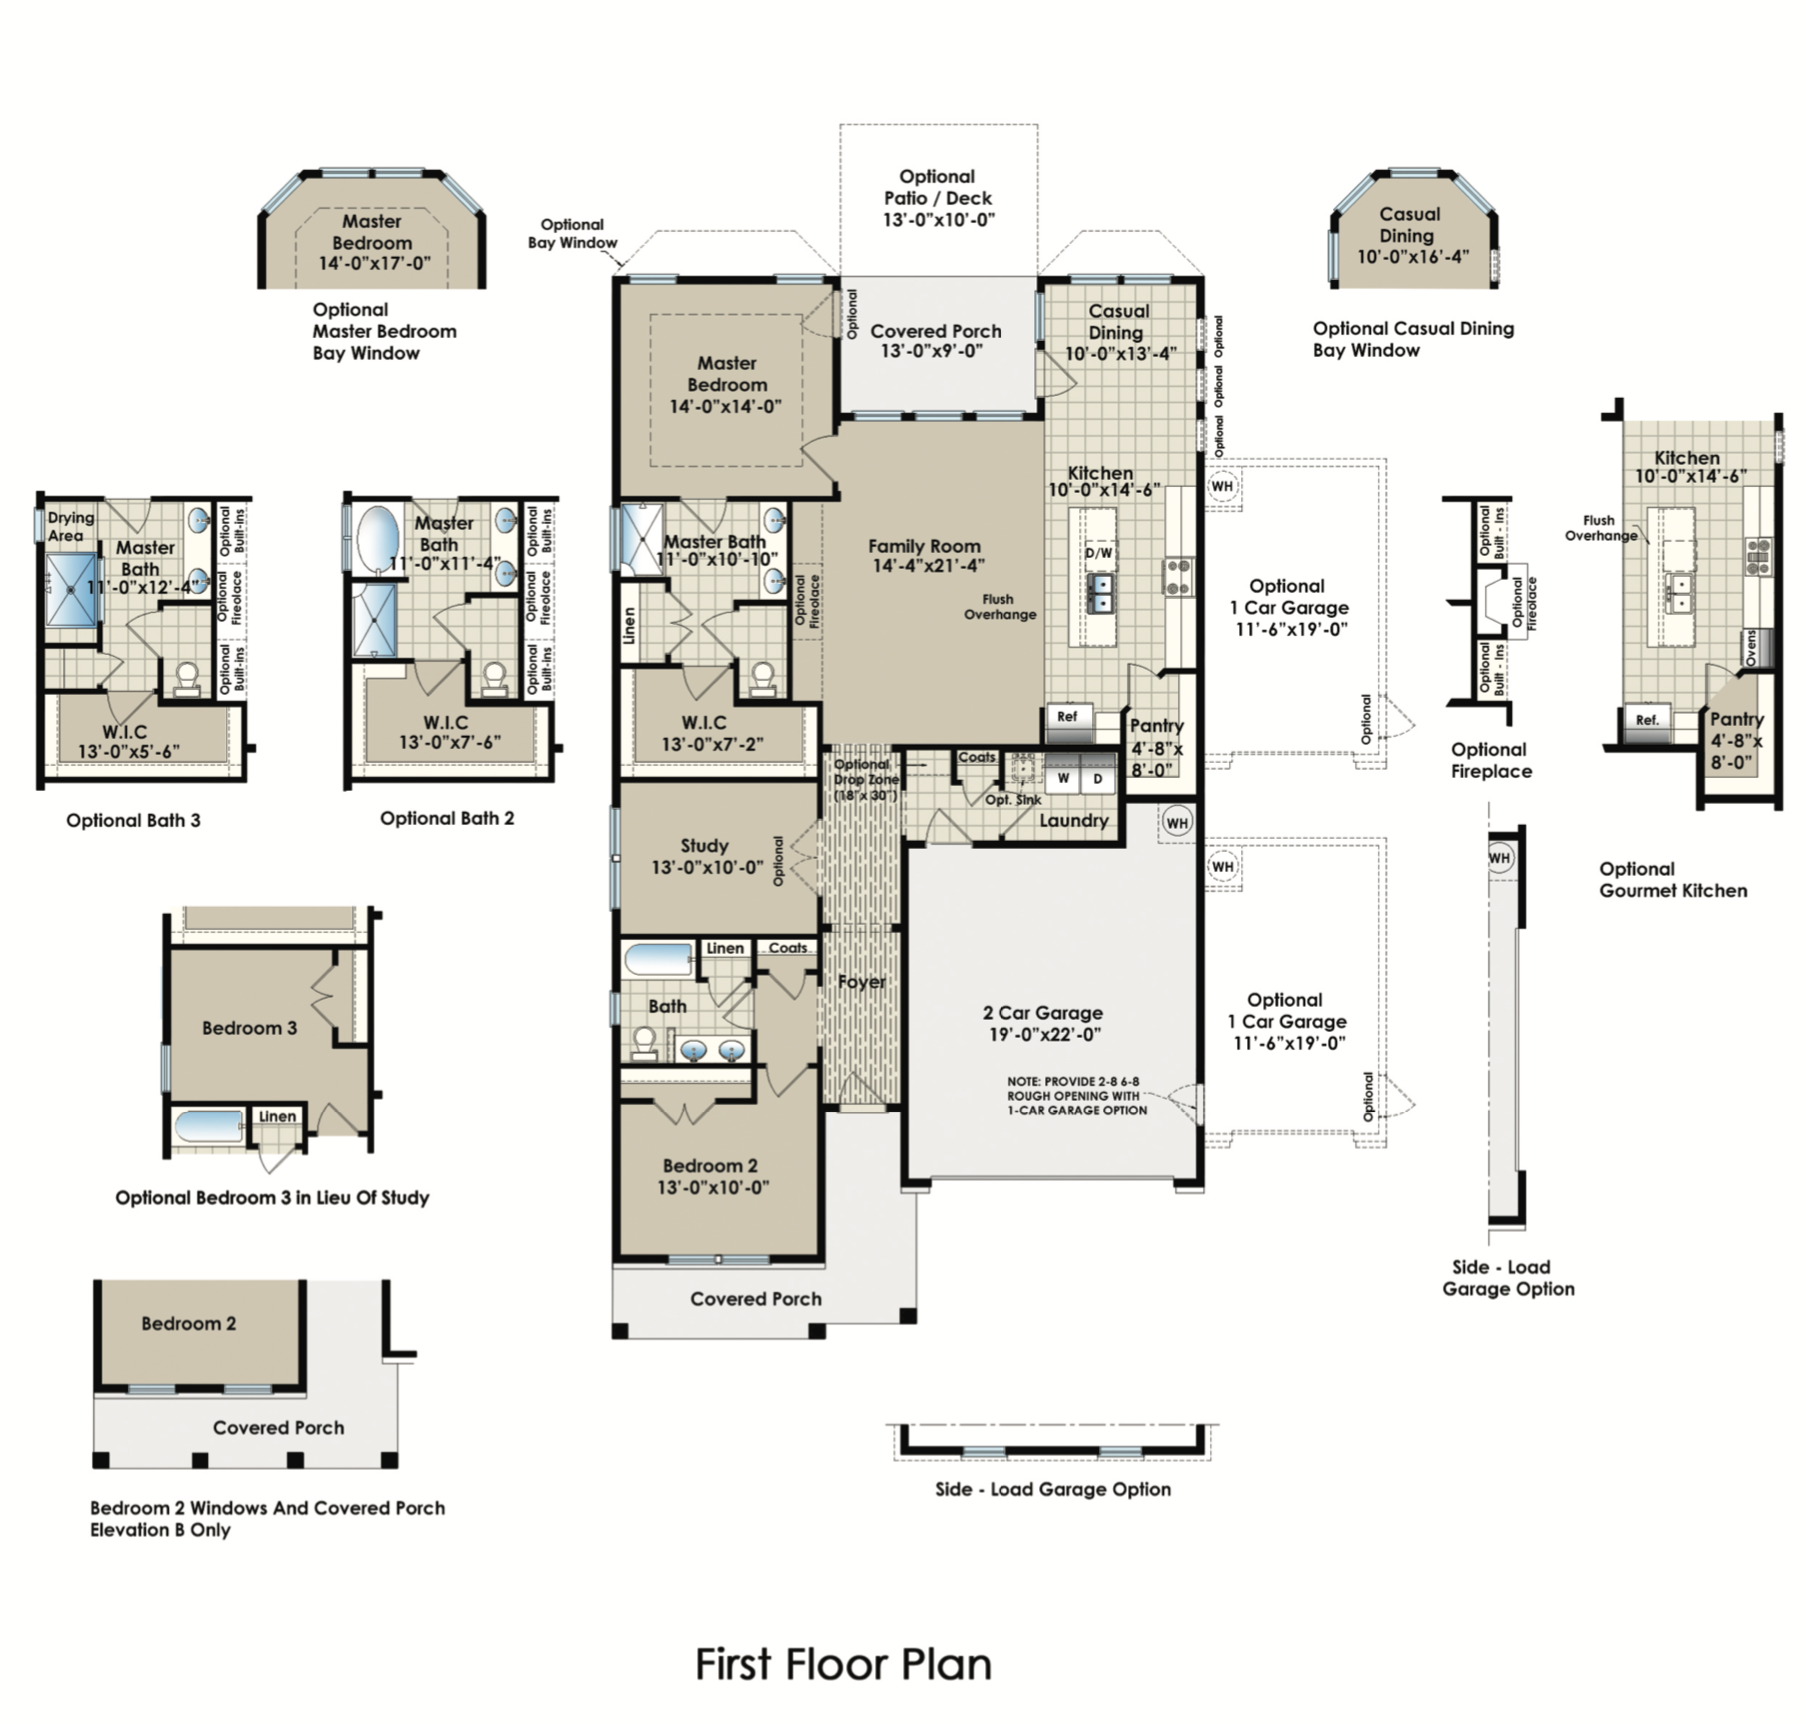 The Belair floor plan image